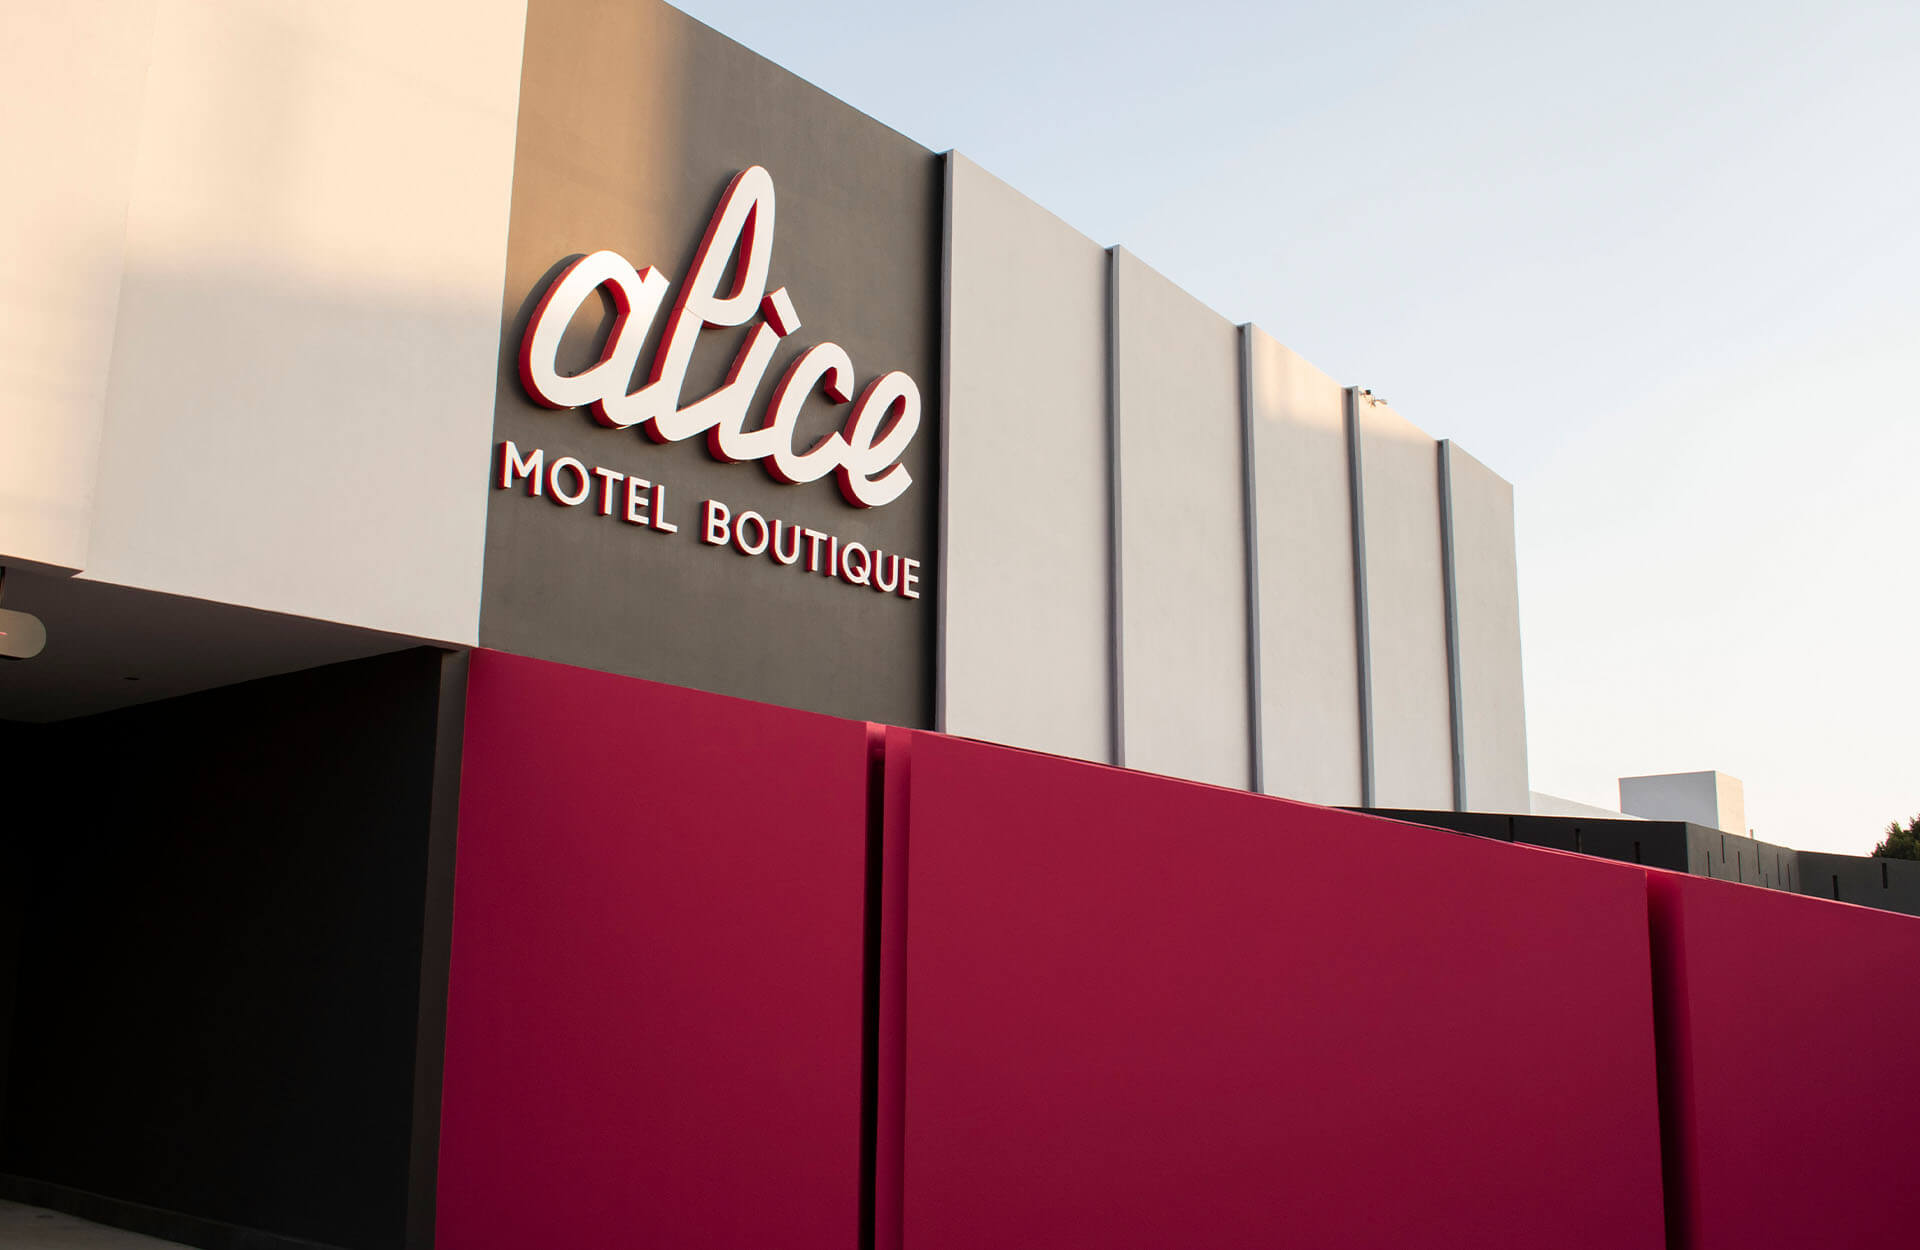 uno de los diez mejotes moteles en puebla - Alice Motel